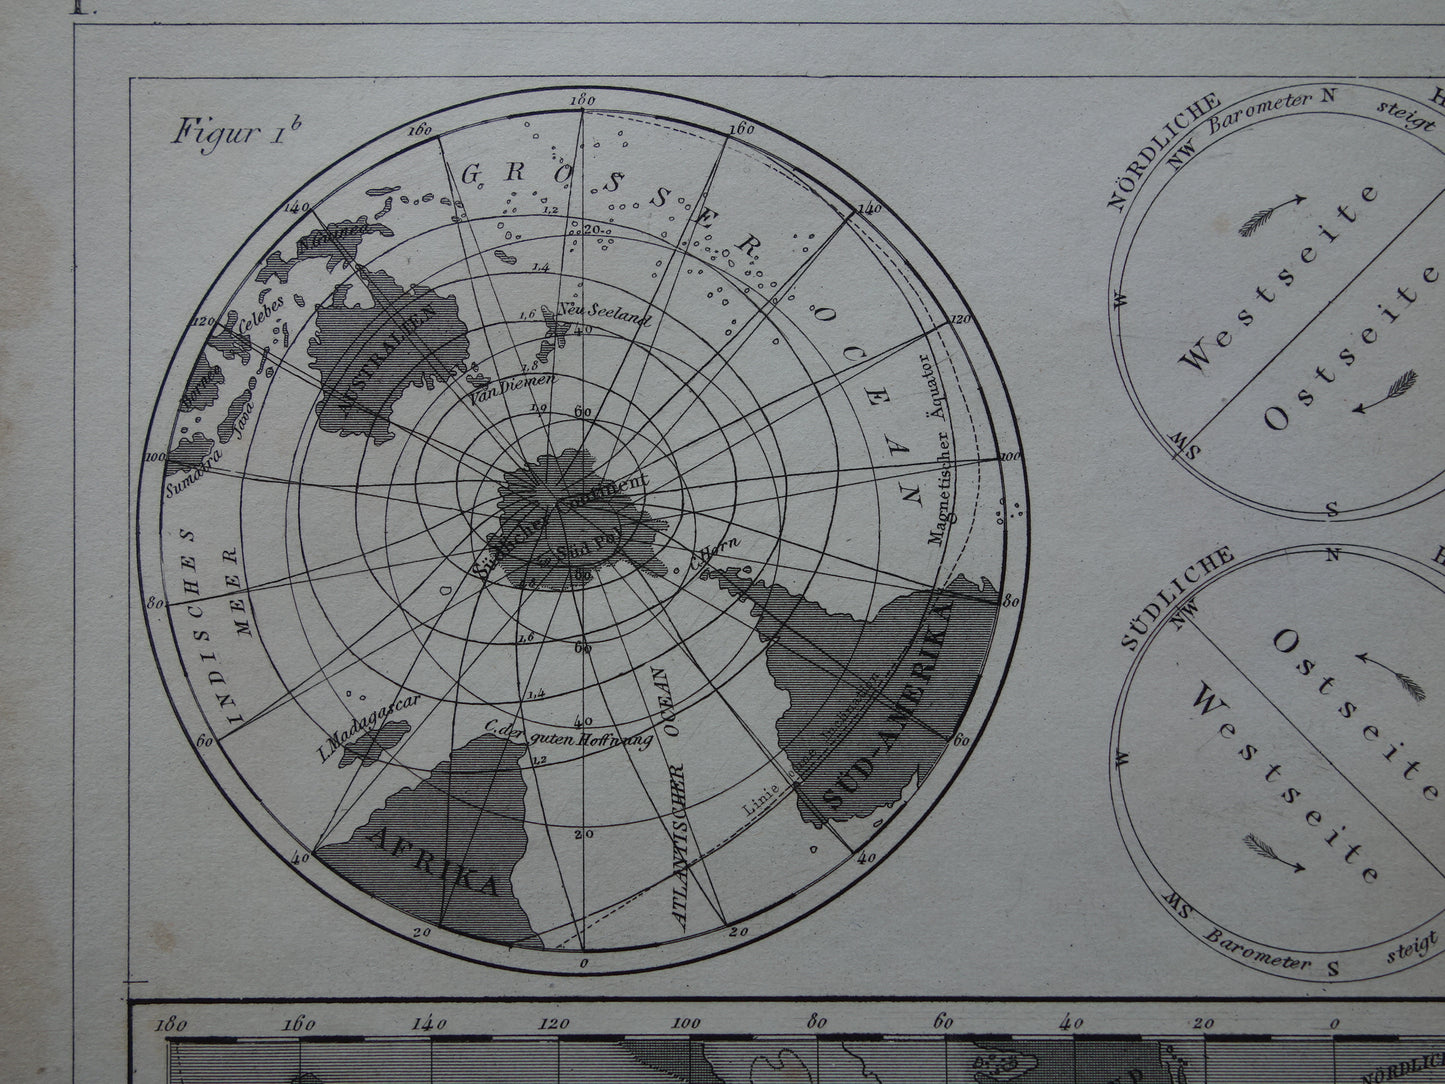 Oude Kaart van het aardmagnetisch veld uit 1849 originele antieke wereldkaart magnetisme polen noordpool zuidpool